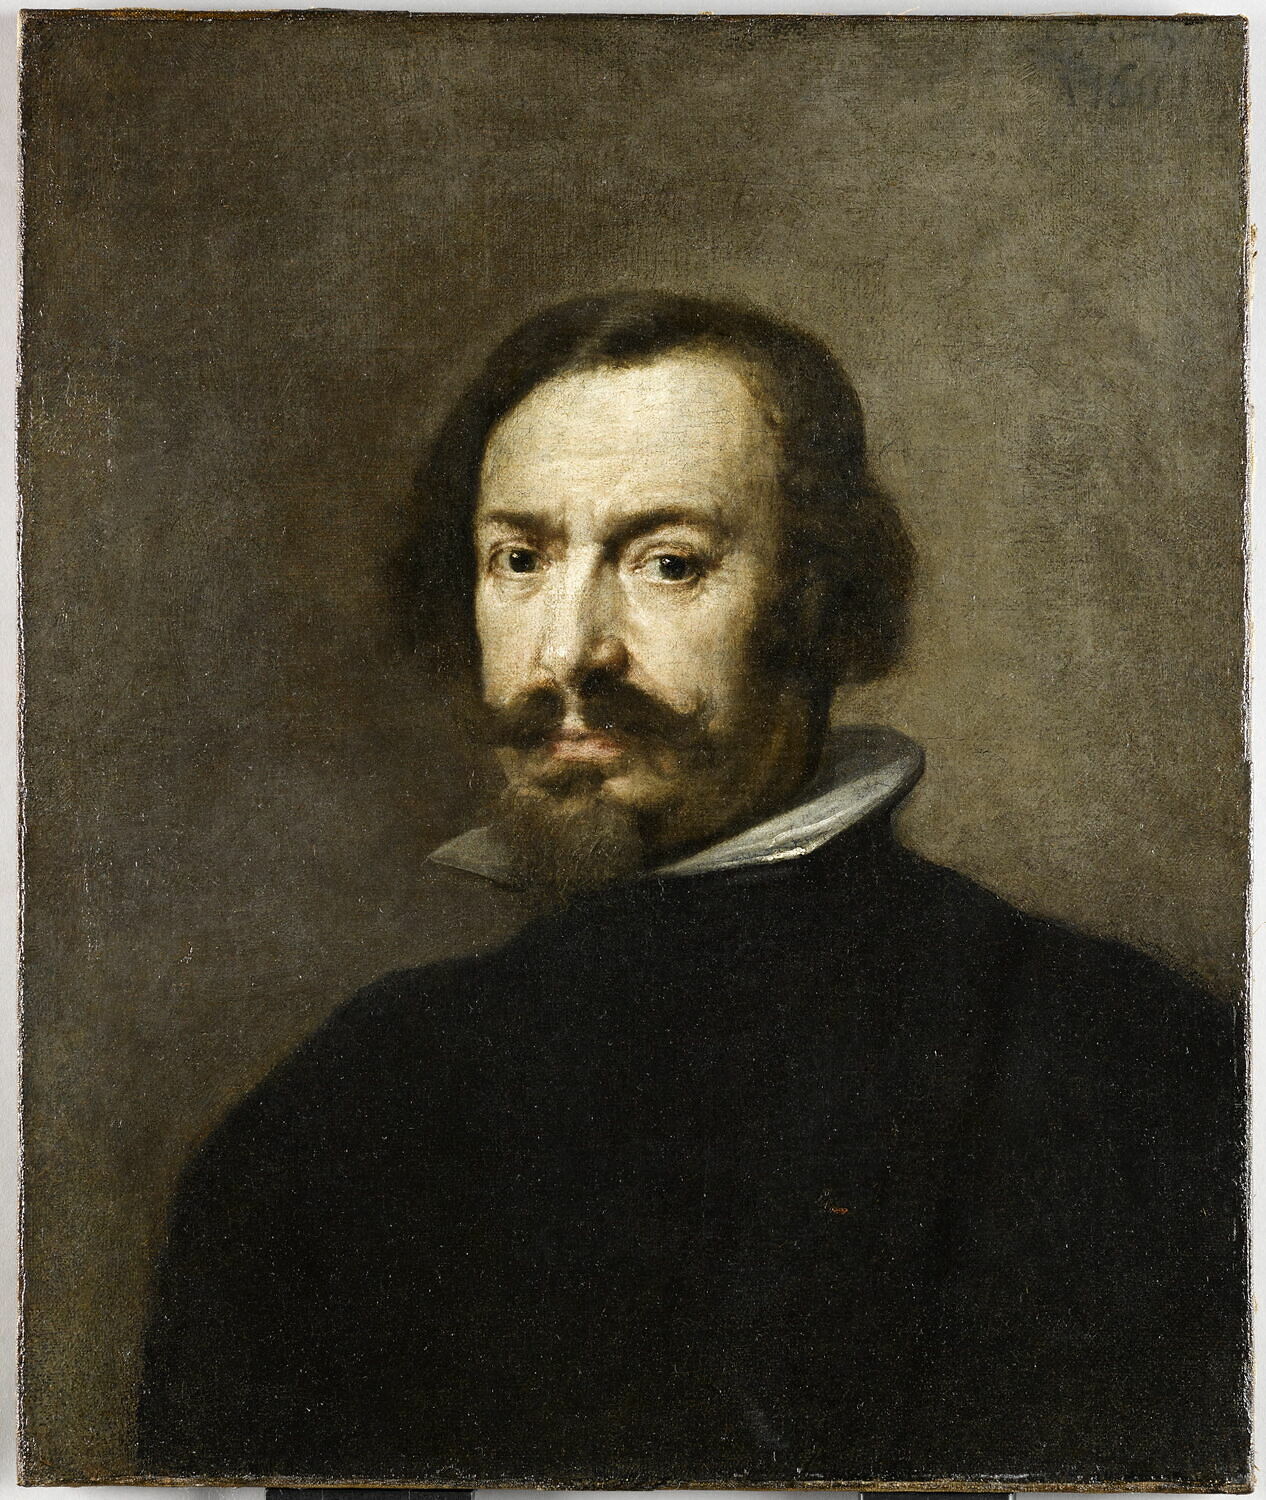 Antonio Pereda y Salgado, Portrait d'homme, 1655, Paris, Musée du Louvre © 2016 RMN-Grand Palais (musée du Louvre) / Franck Raux